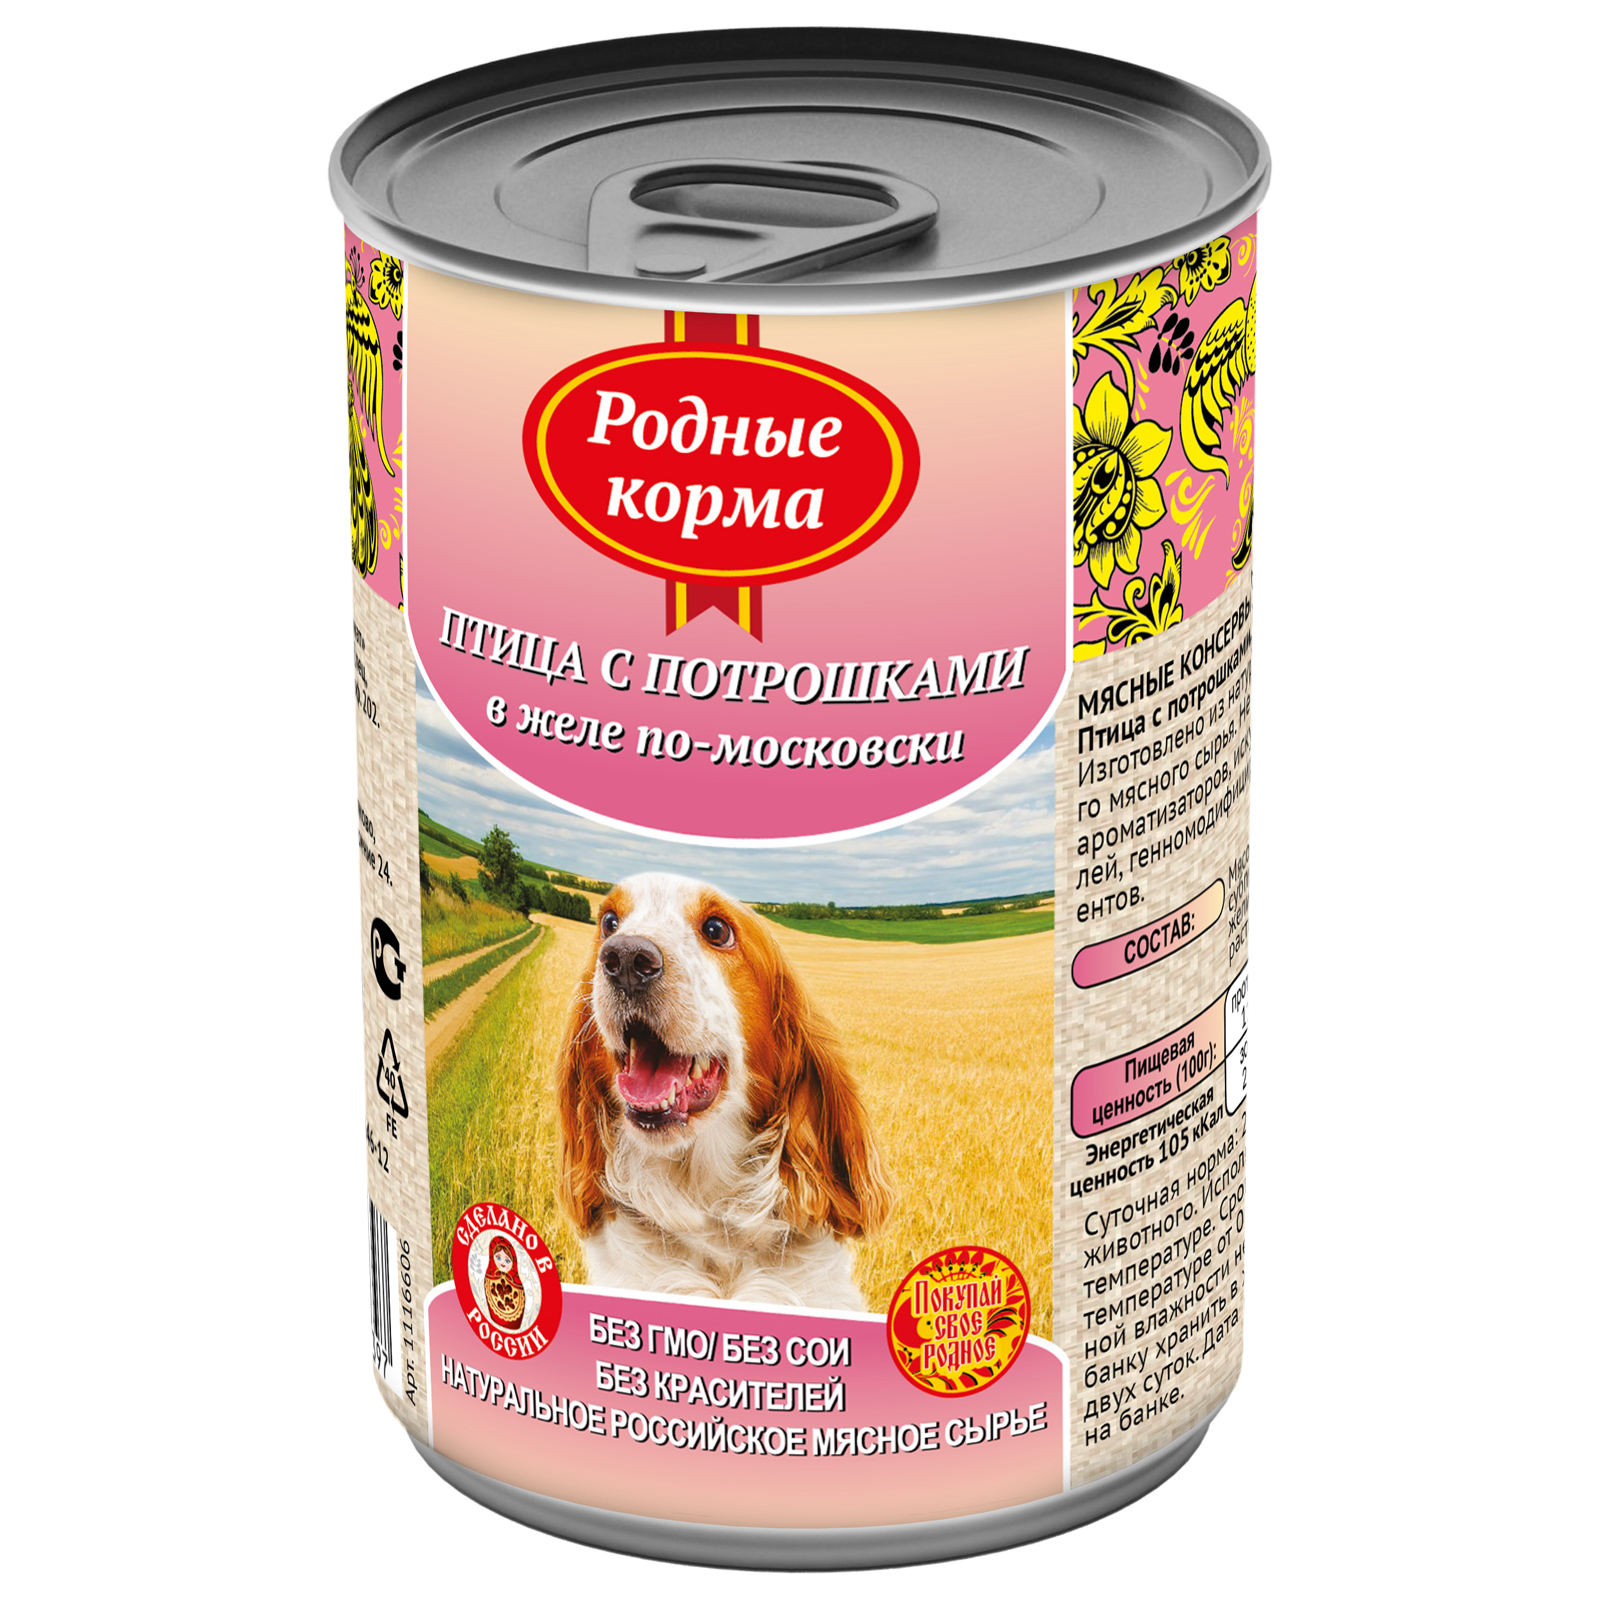 Консервы для собак Родные корма, птица с потрошками по-московски, 410г